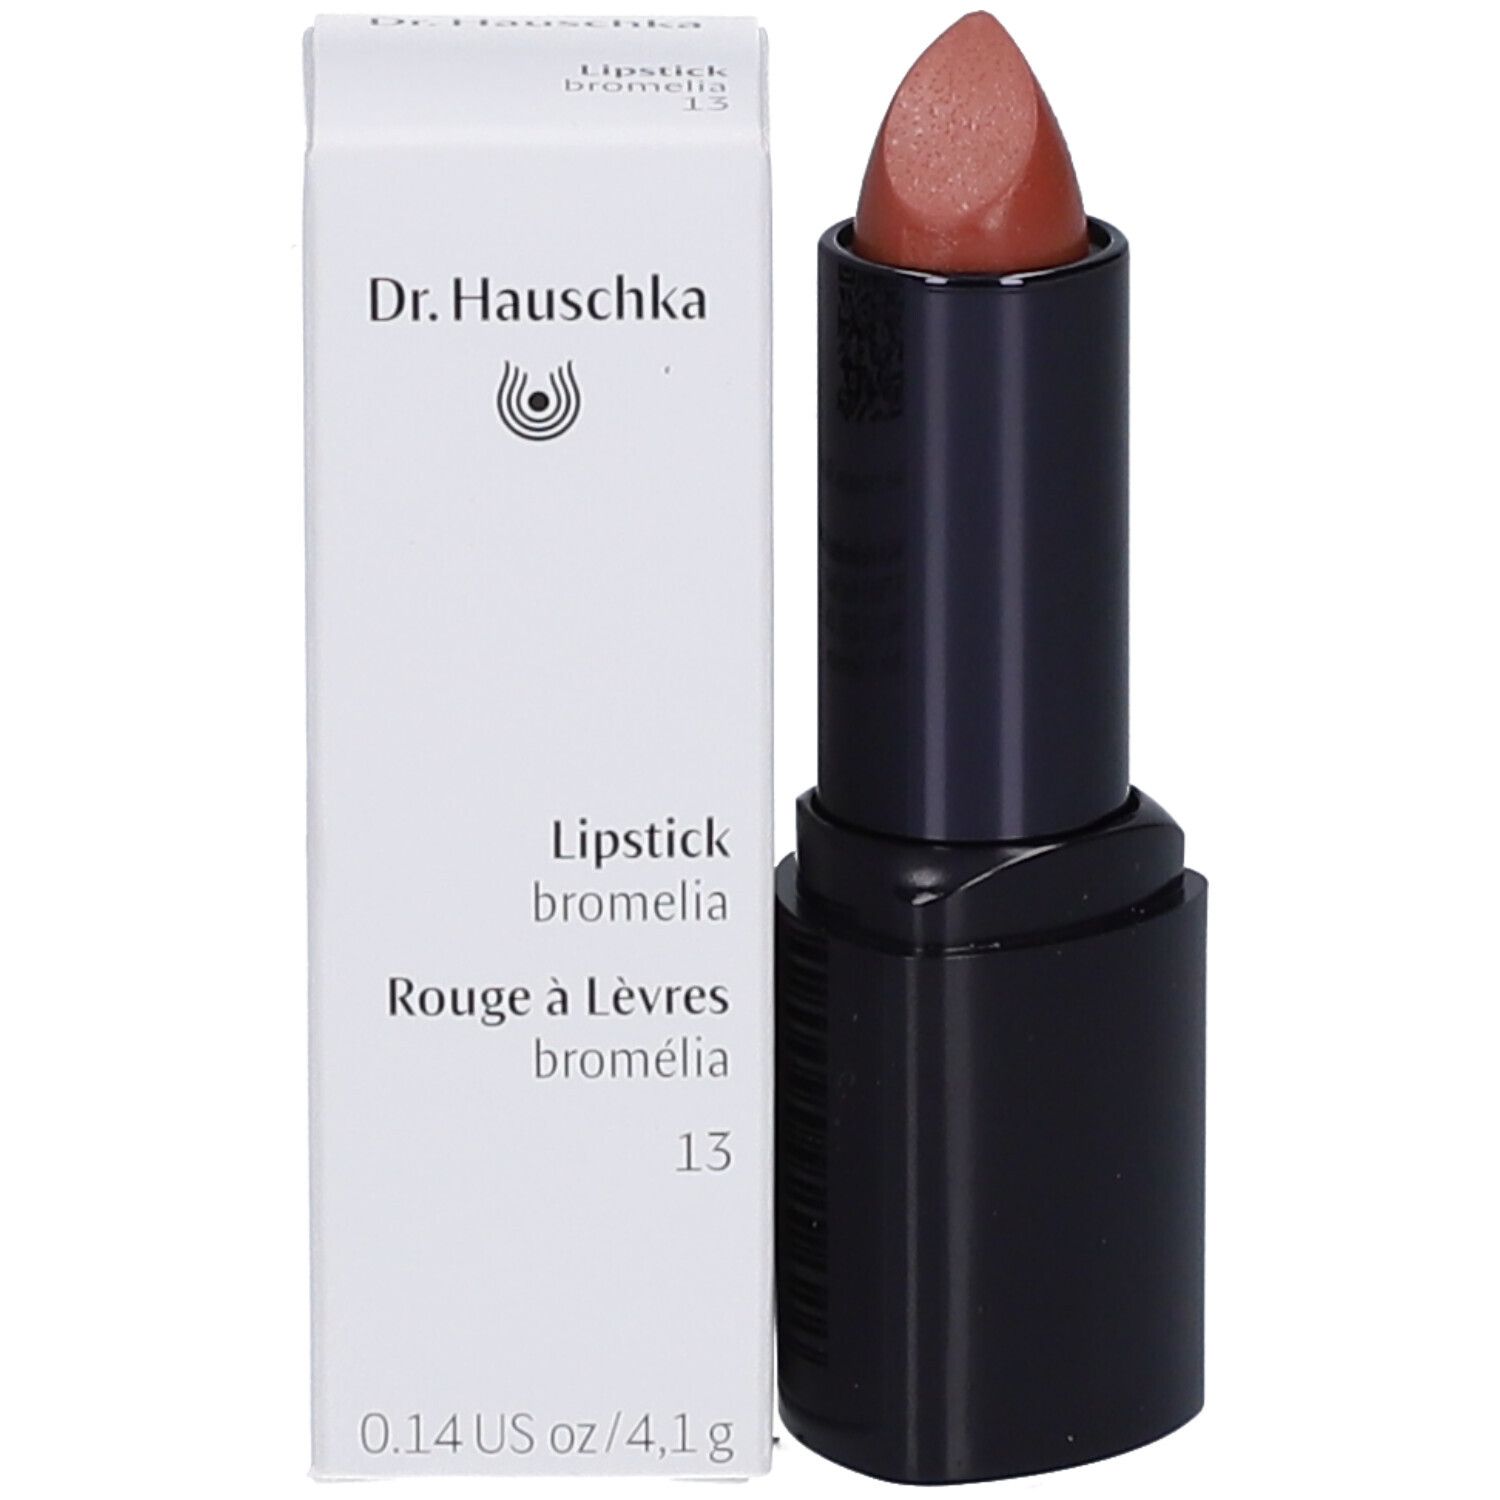 Dr. Hauschka Lipstick 13 bromelia 4,1g